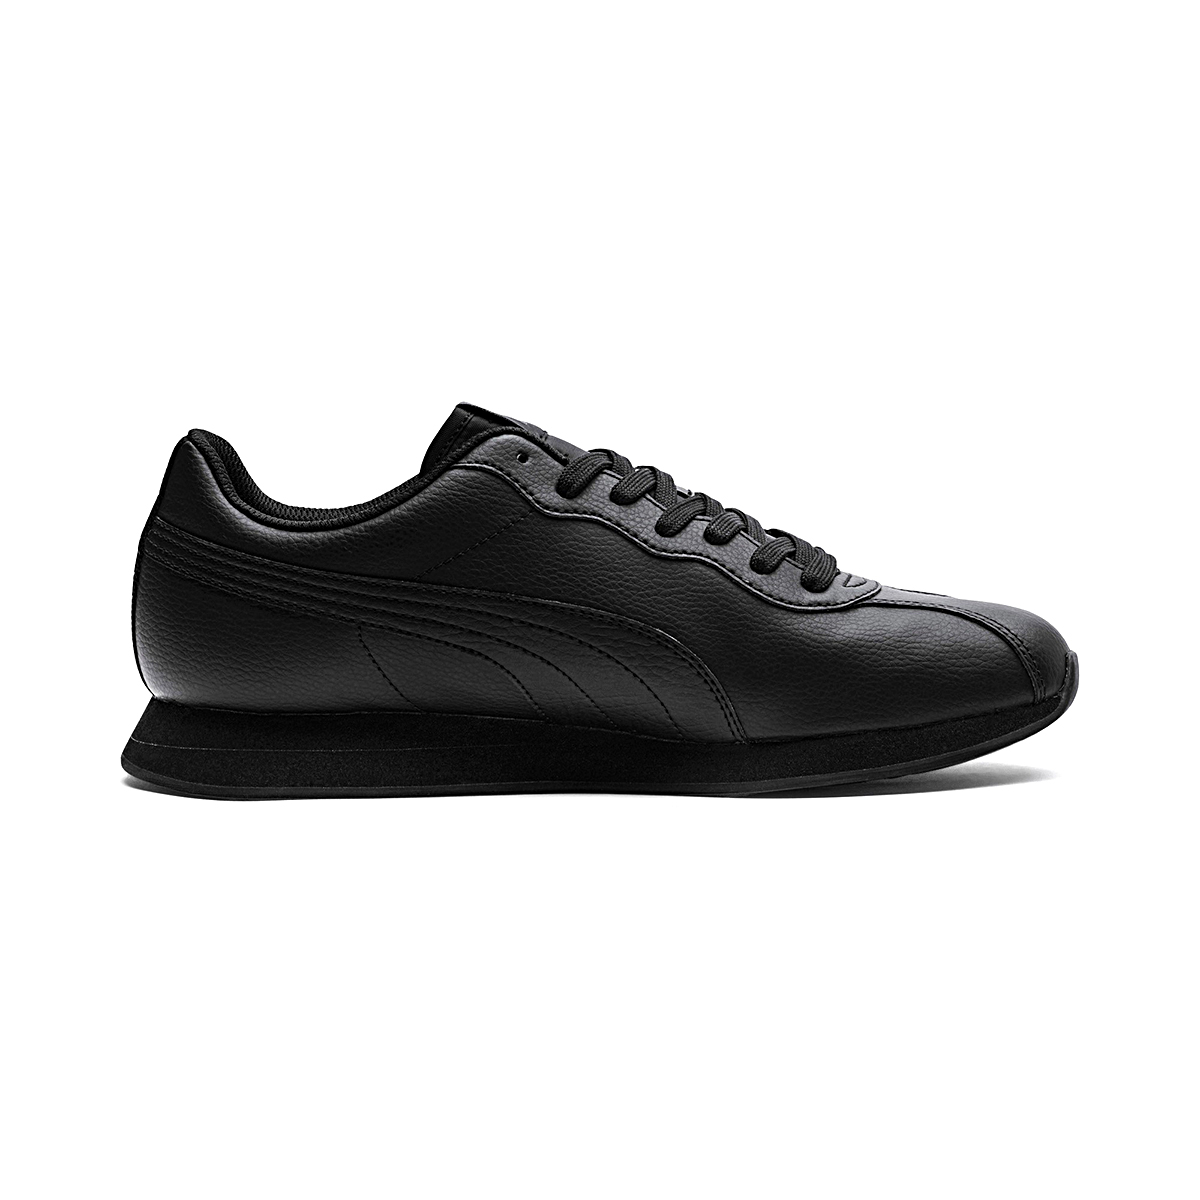 Puma Turin II Herren Sneaker Schuhe schwarz 366962 02